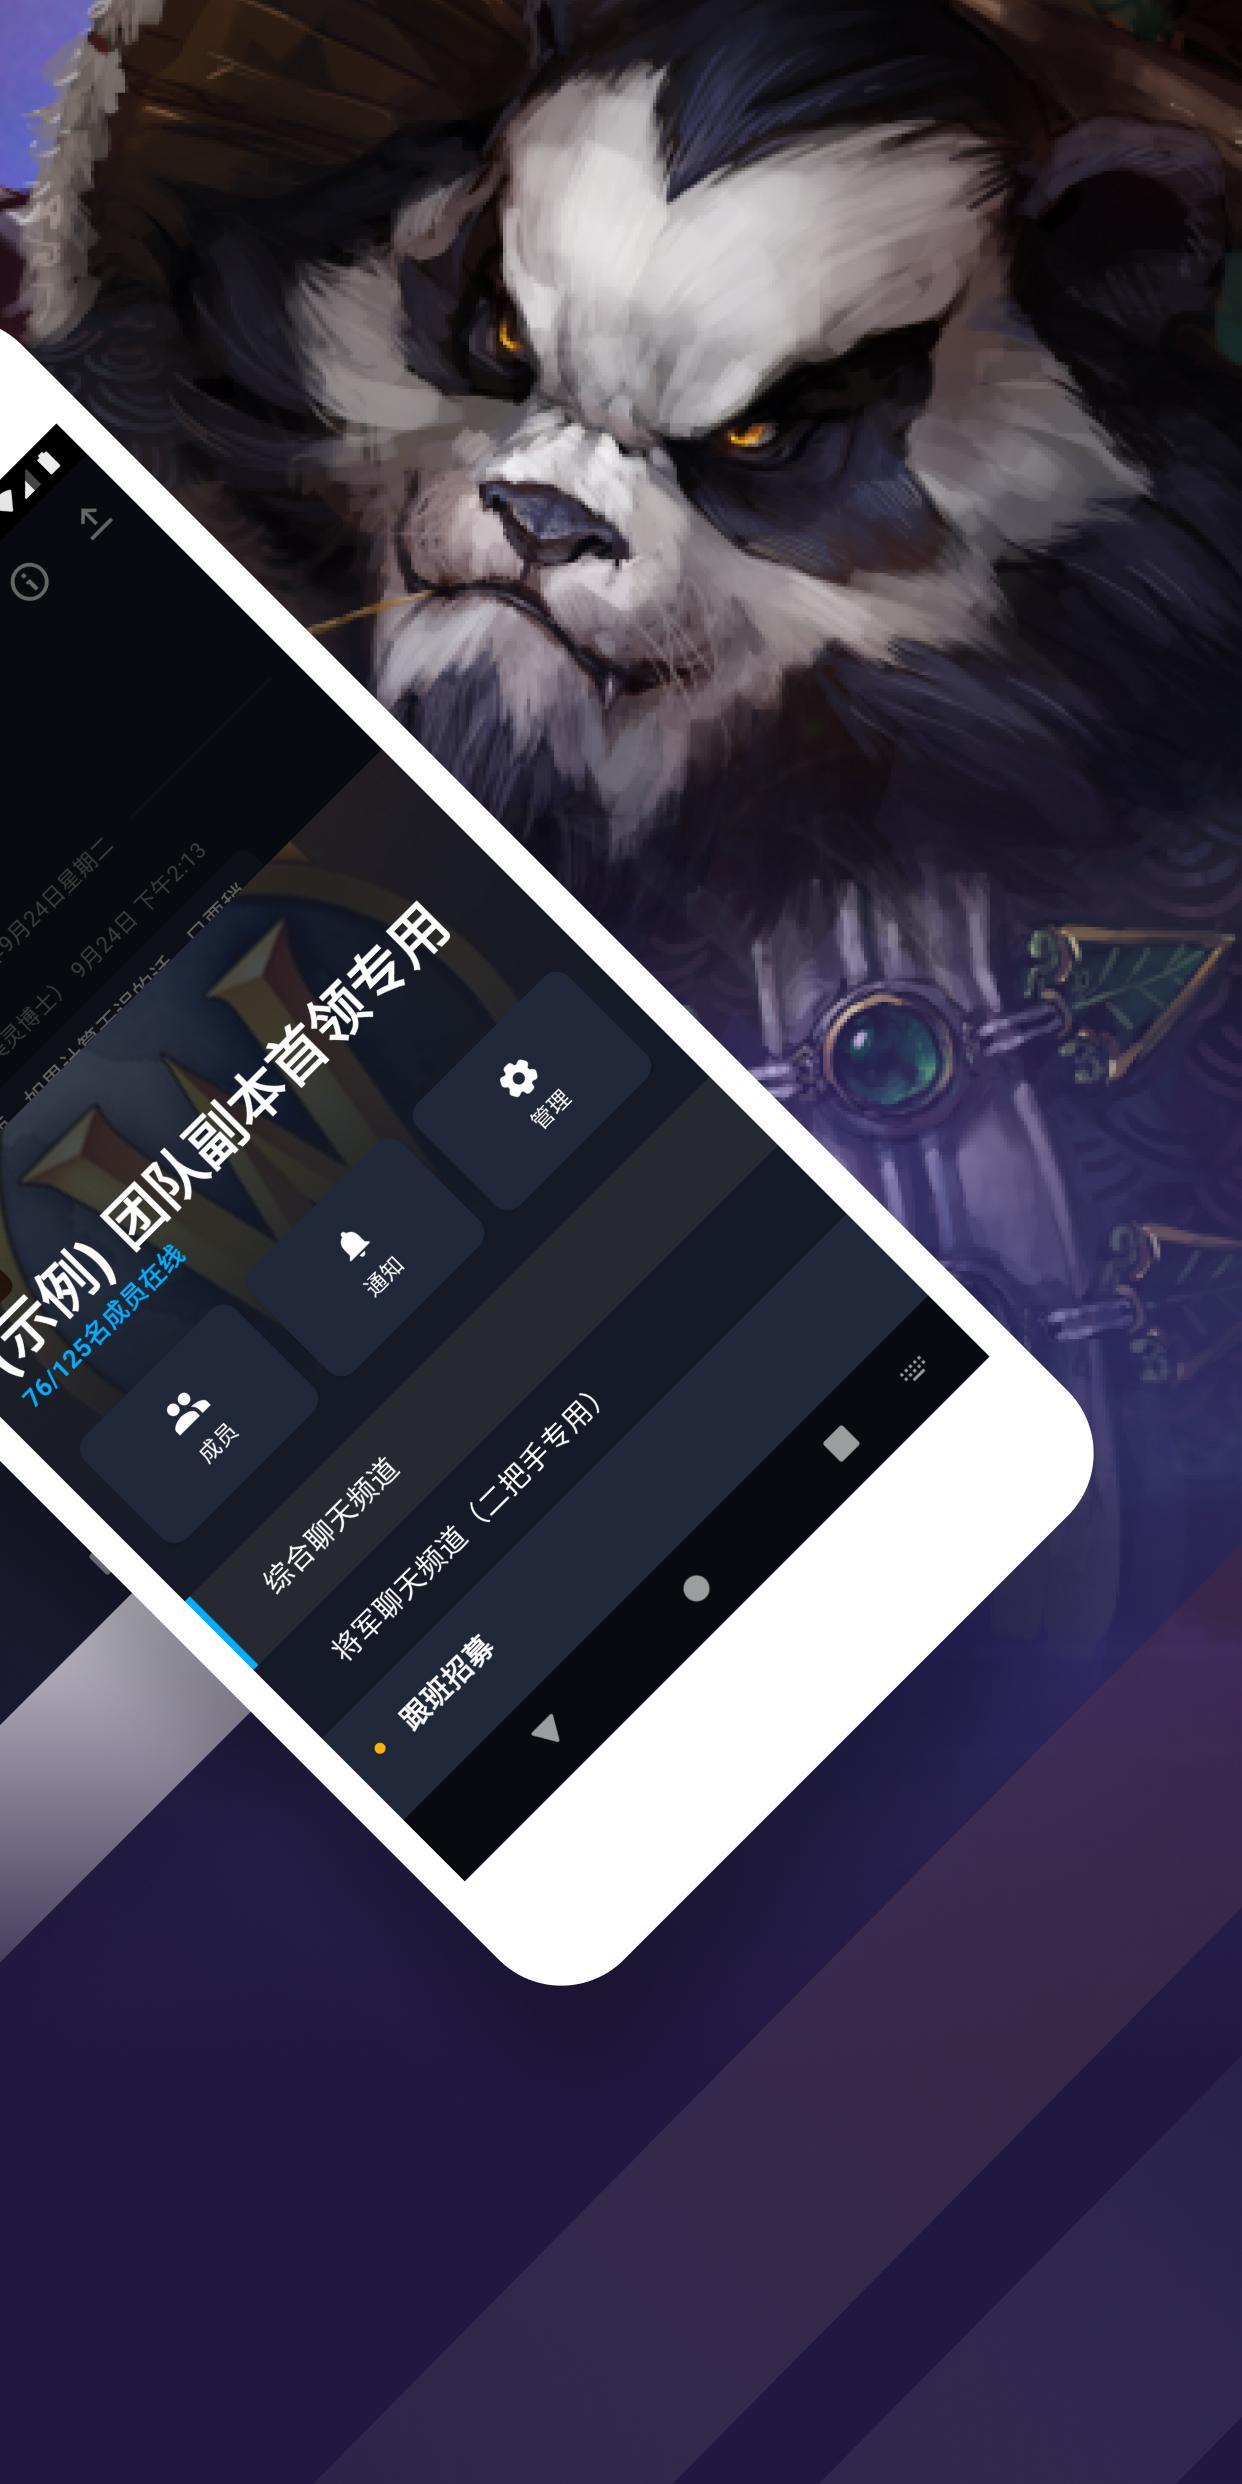 战网中文版app截图